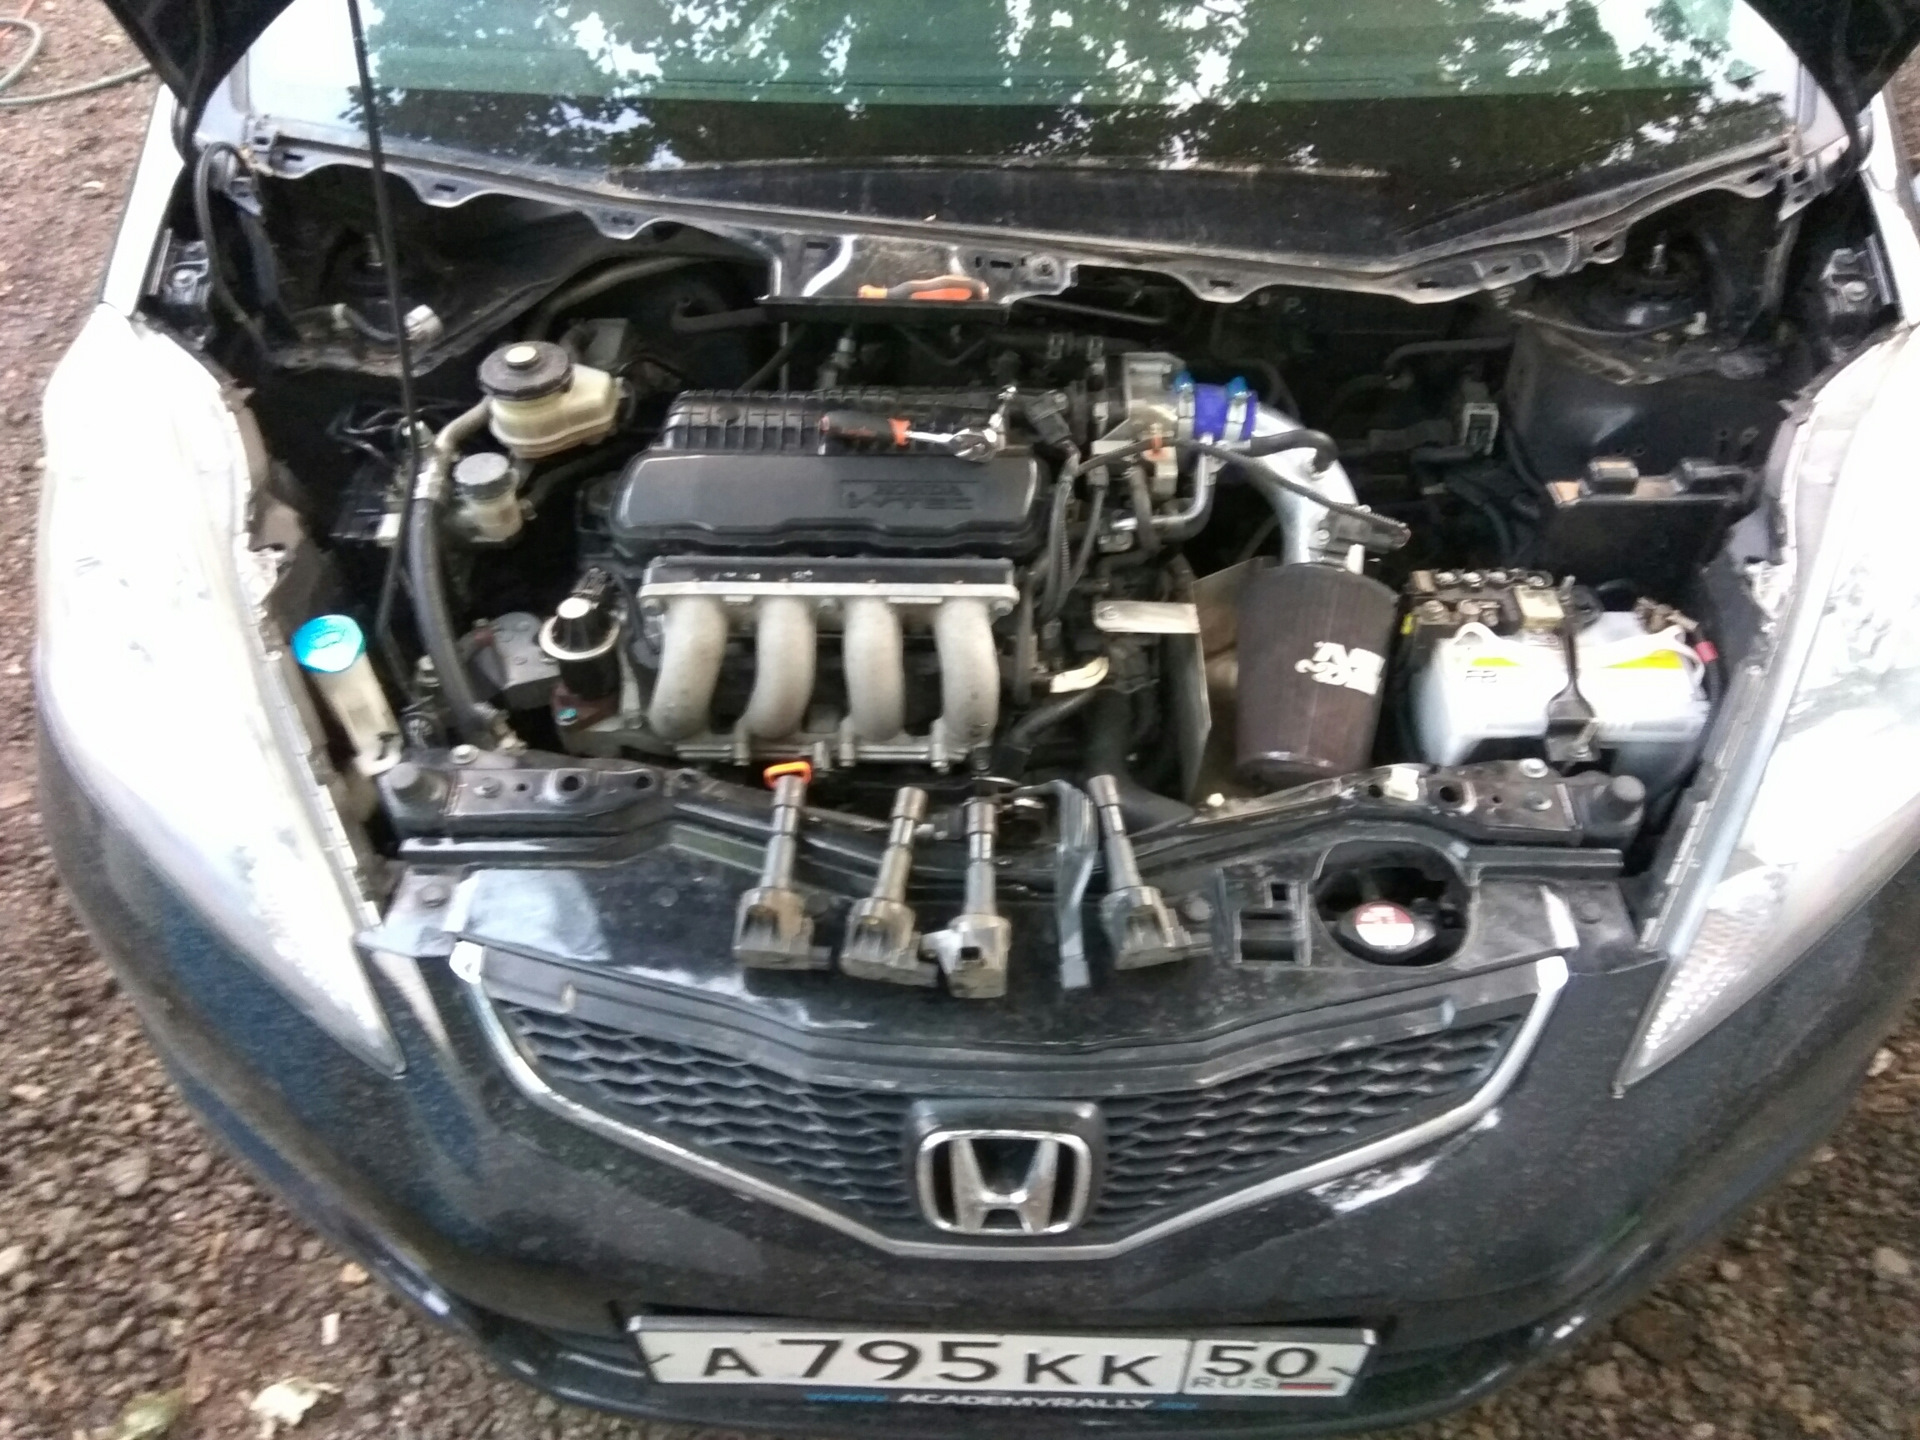 Двигатель фит 1.5. Свечи зажигания l13a Honda Fit. Хонда джаз 2012 мотор. Мотор Хонда фит 1.5. Dvigatel Honda Fit 2012 1.3.